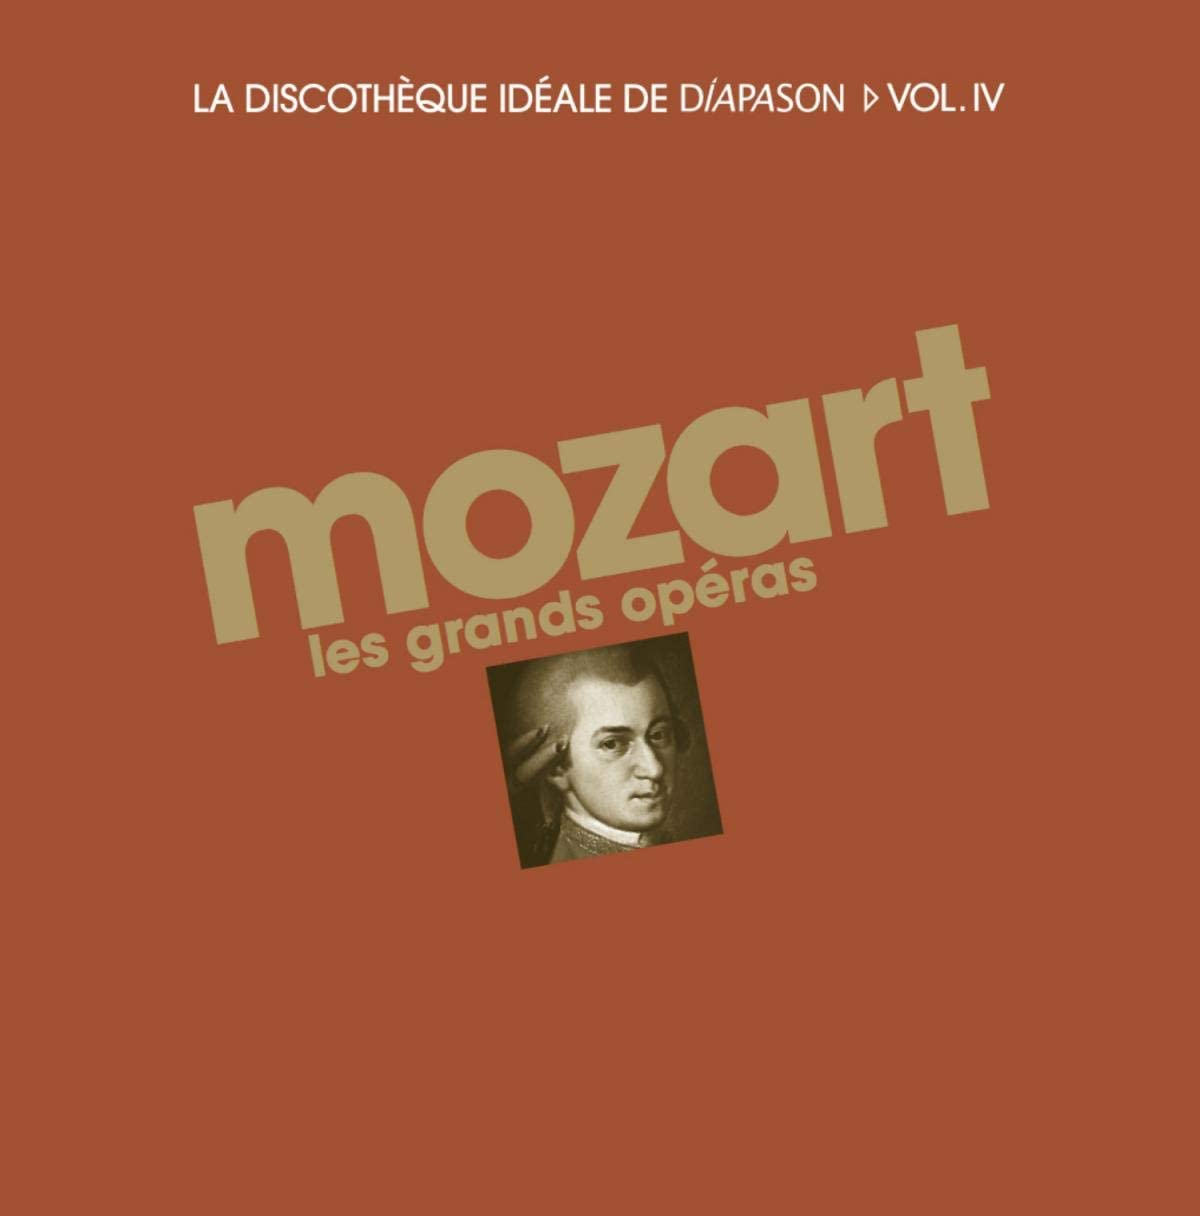 Mozart les grands operas | Wolfgang Amadeus Mozart